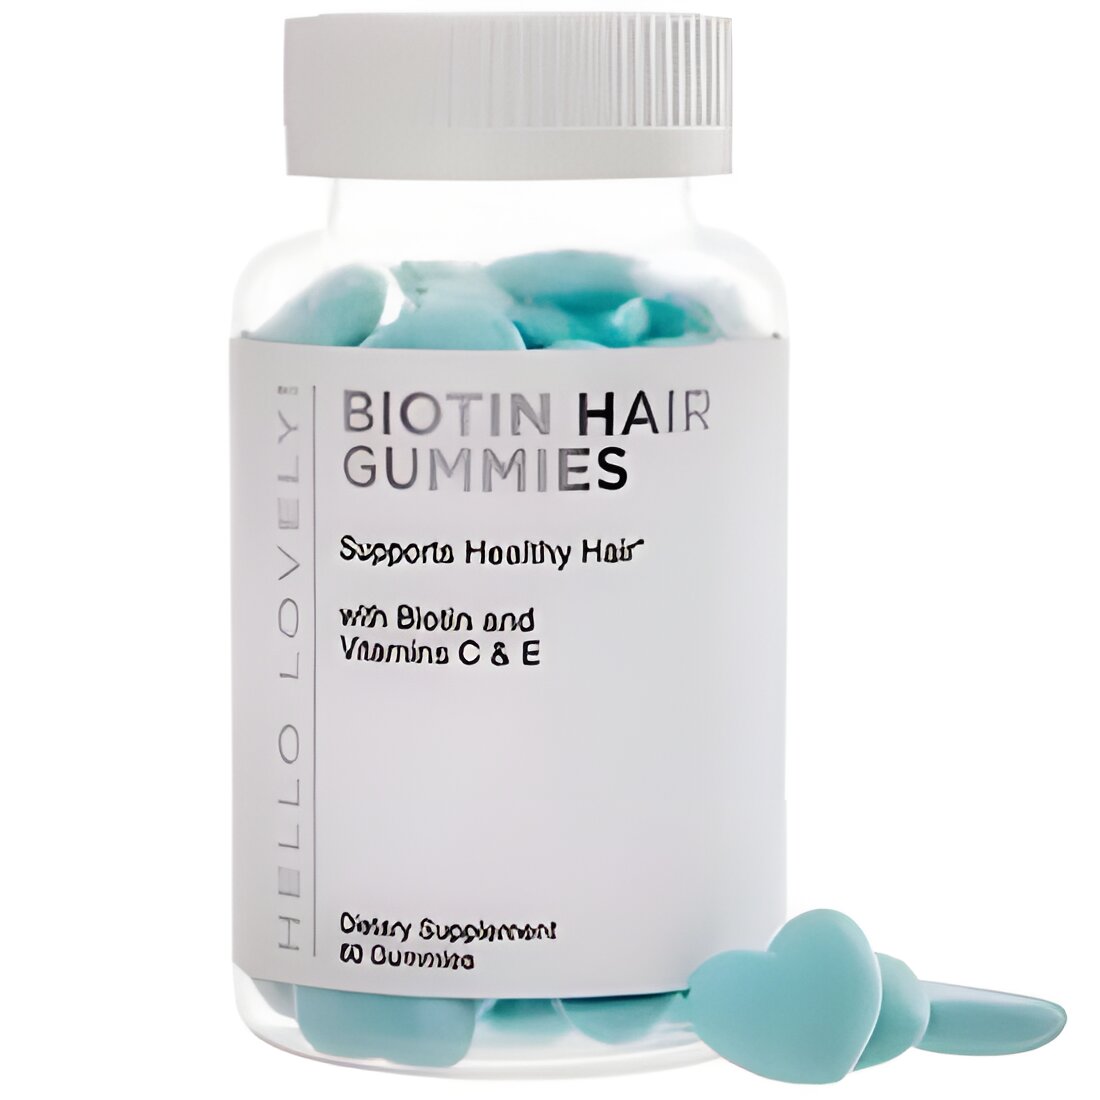 Free Biotin Hair Gummy Vitamins